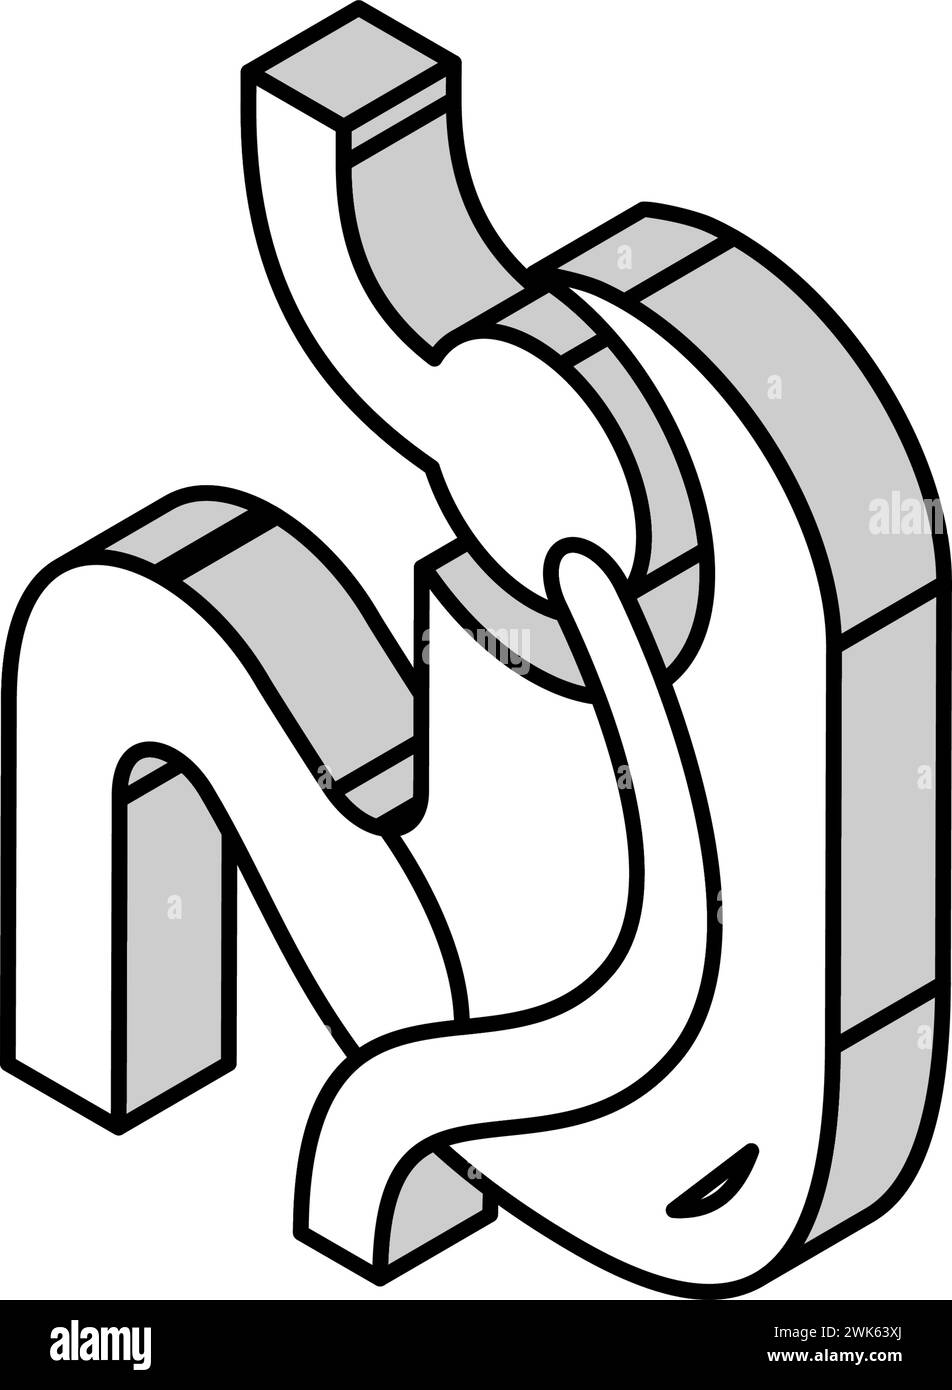 Illustration des Isometrischen Isometrie-Symbols zum Schnüren Stock Vektor